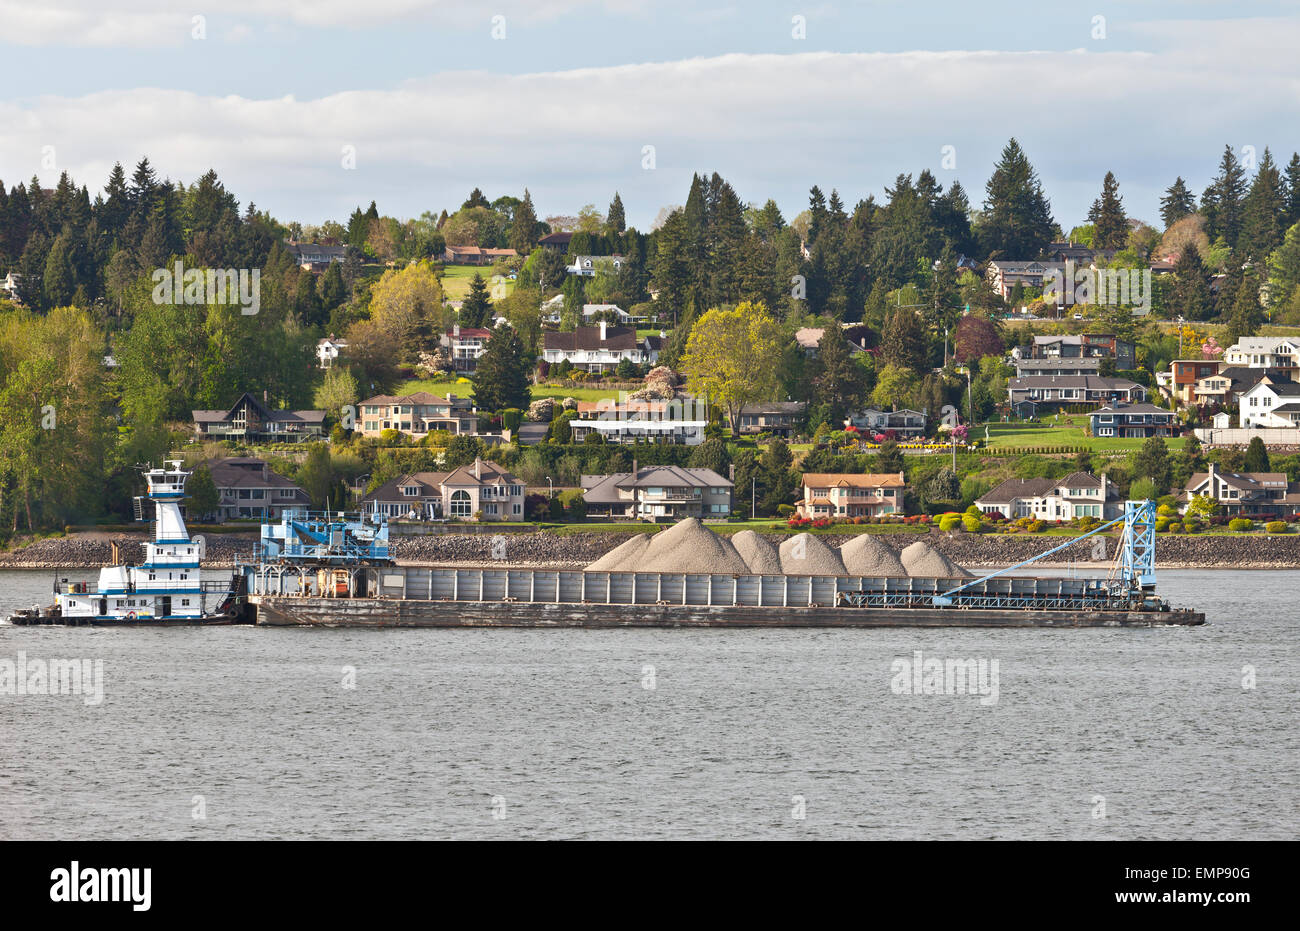 Barge passe par de nouveaux hôtels particuliers donnant sur la rivière Columbia, dans l'état de Washington. Banque D'Images